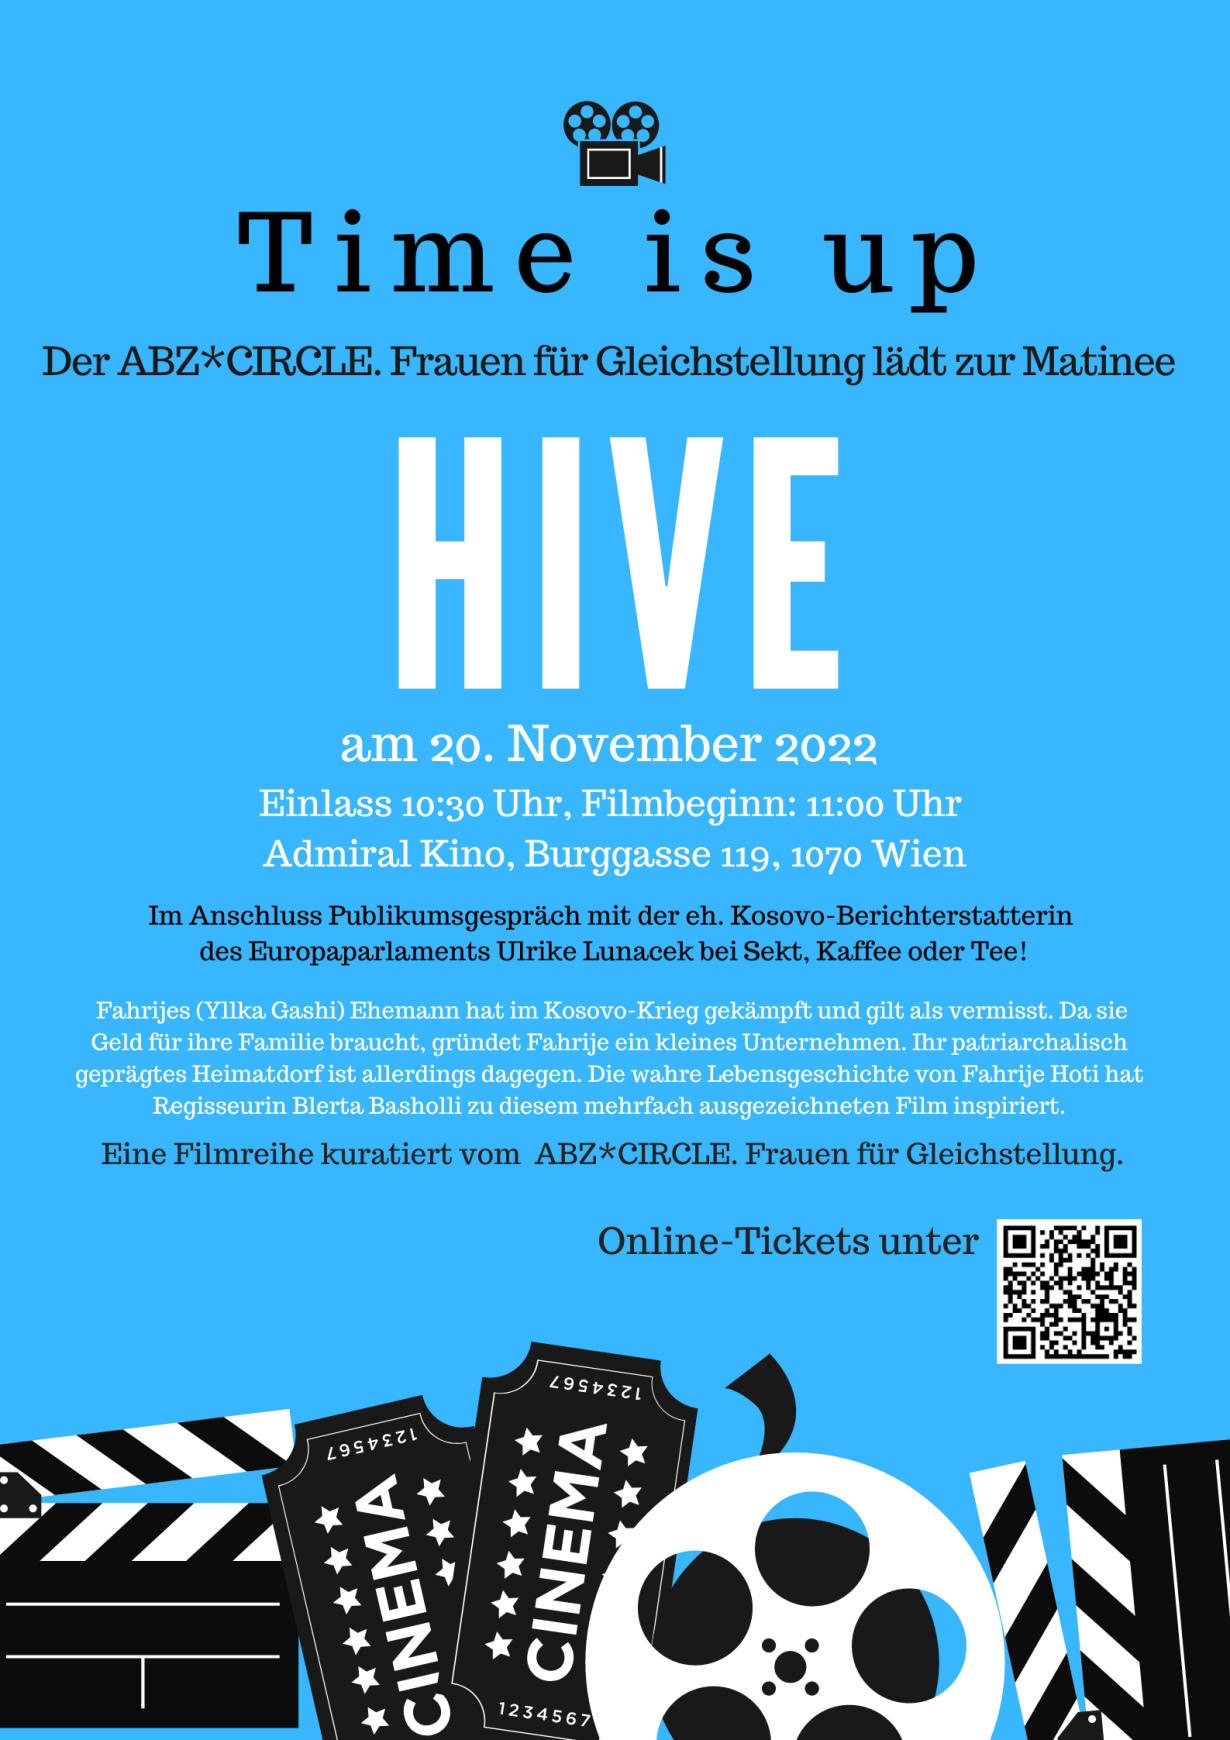 Filmplakat: Das Gleichstellungskino präsentiert den Film HIVE